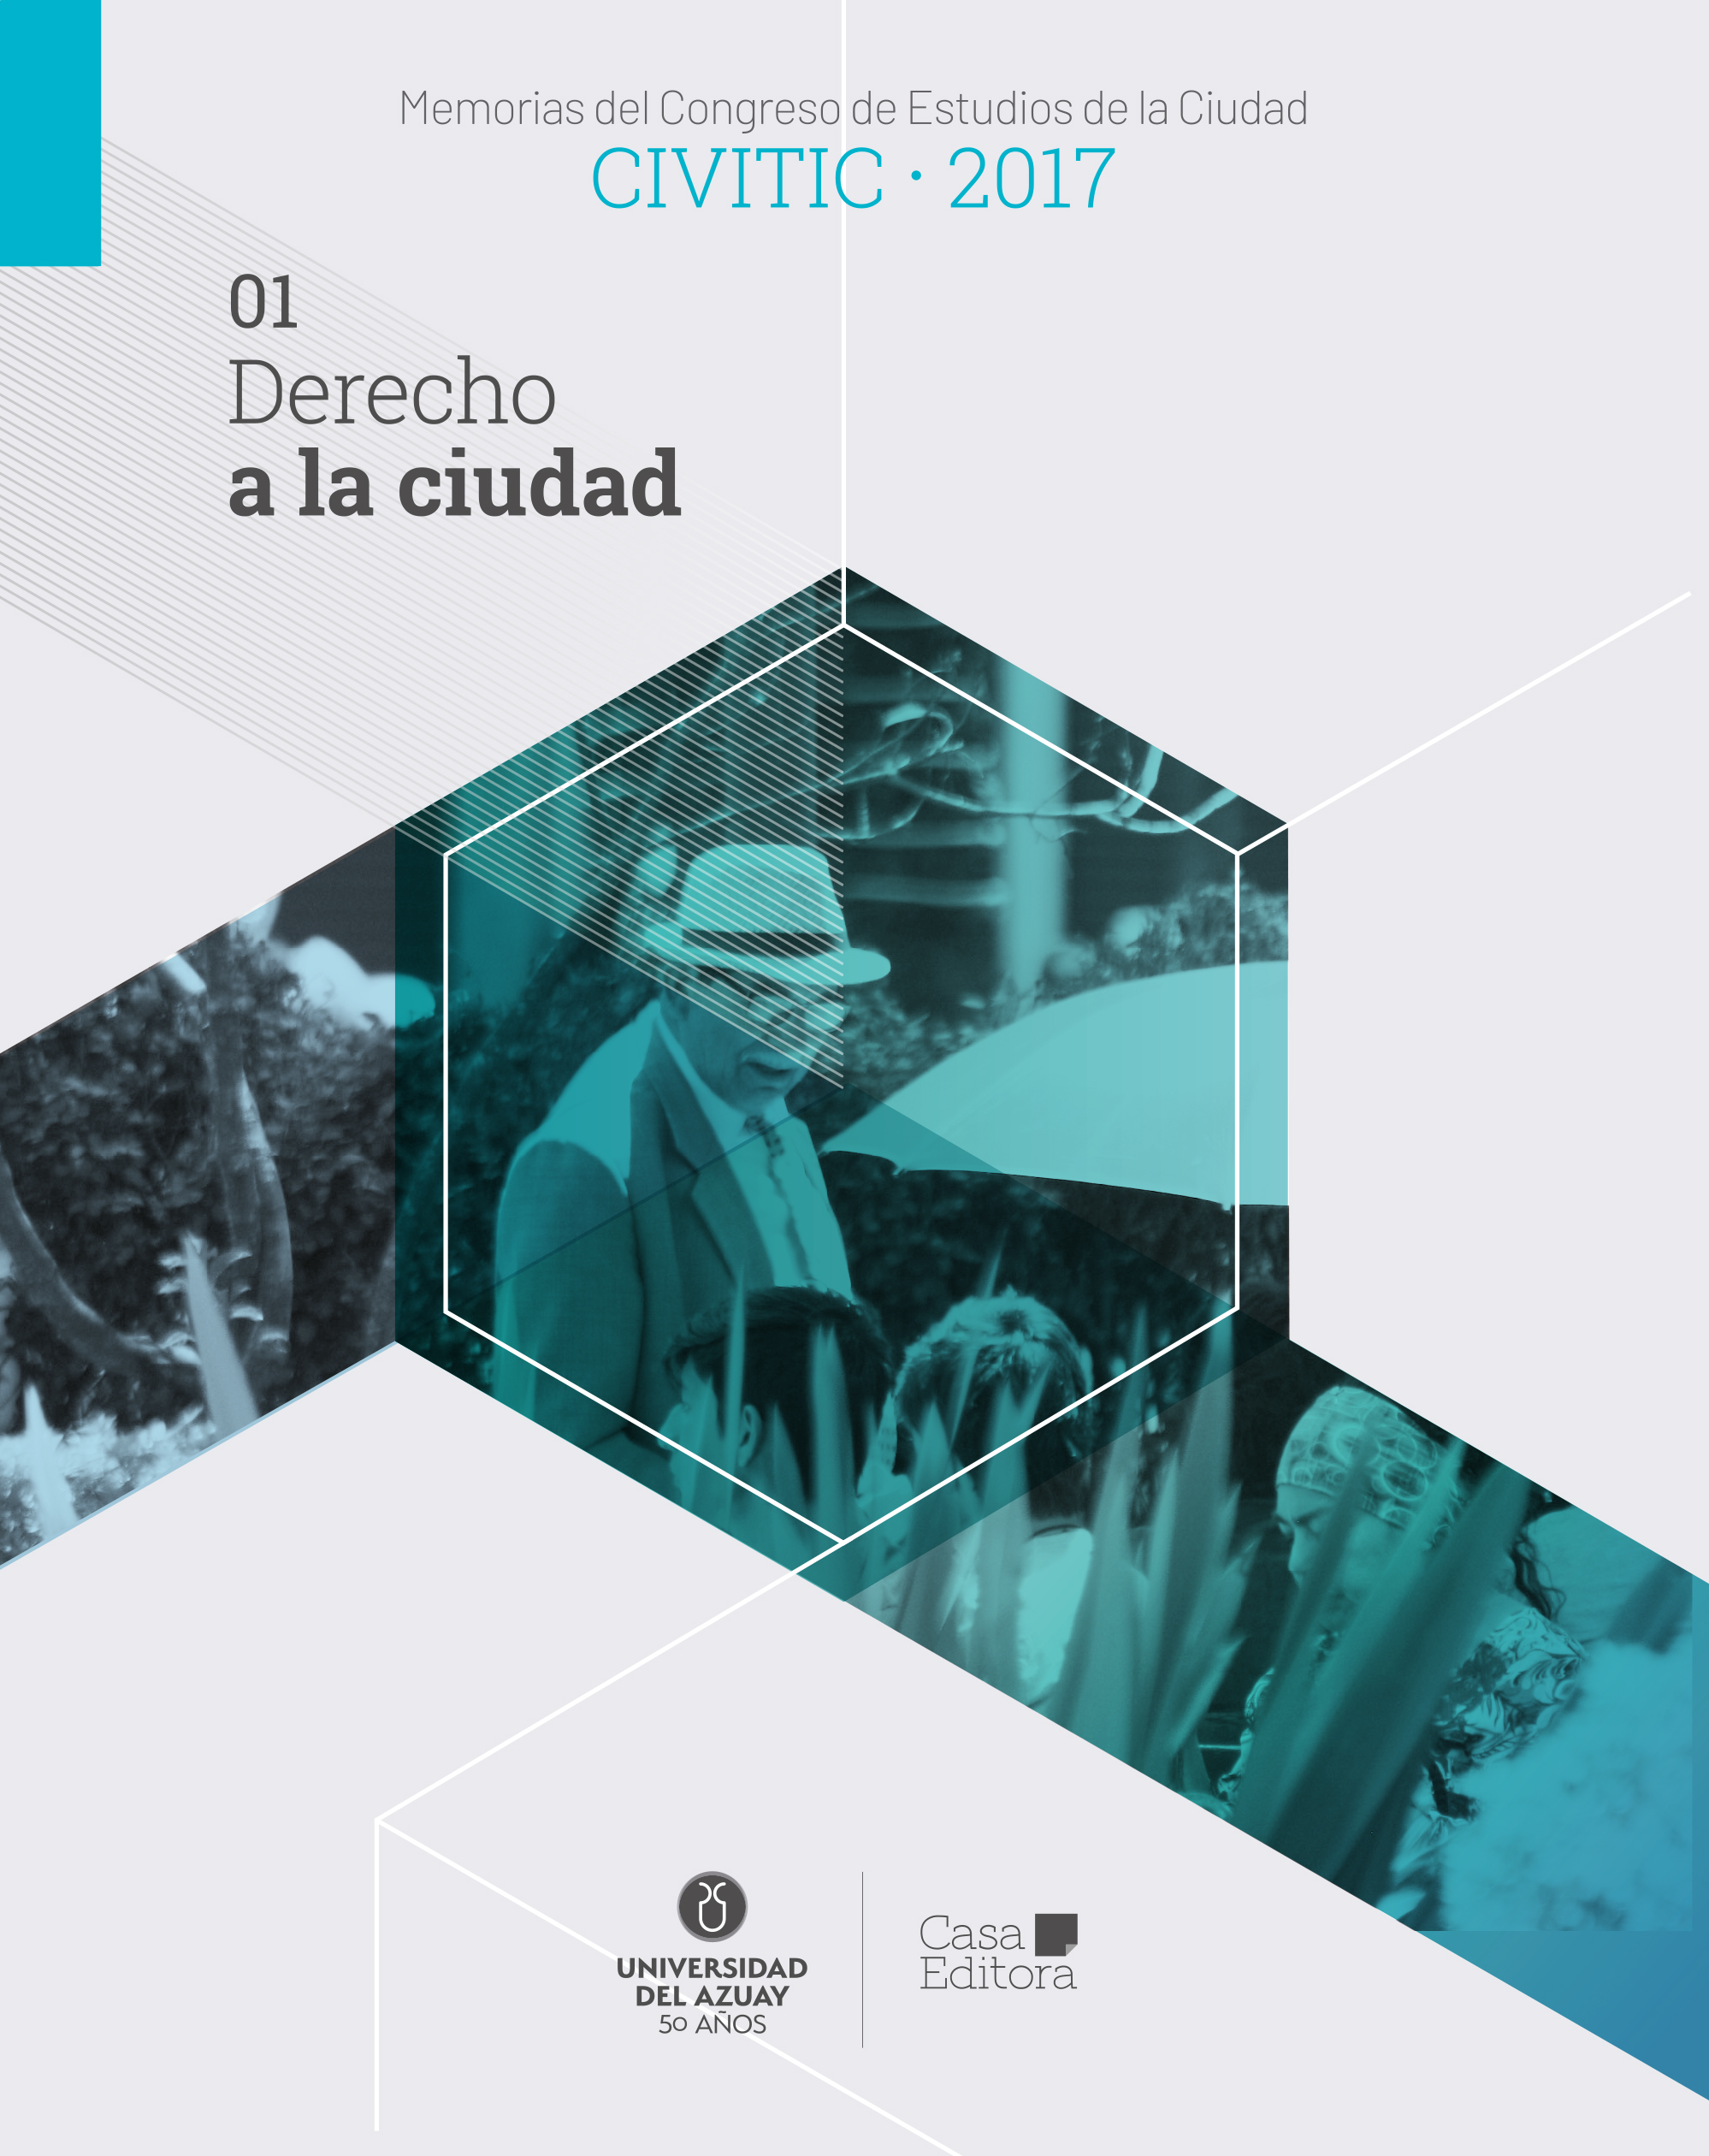 					Afficher Memorias del Congreso de Estudios de la Ciudad CIVITIC 2017 -  Derecho a la ciudad
				